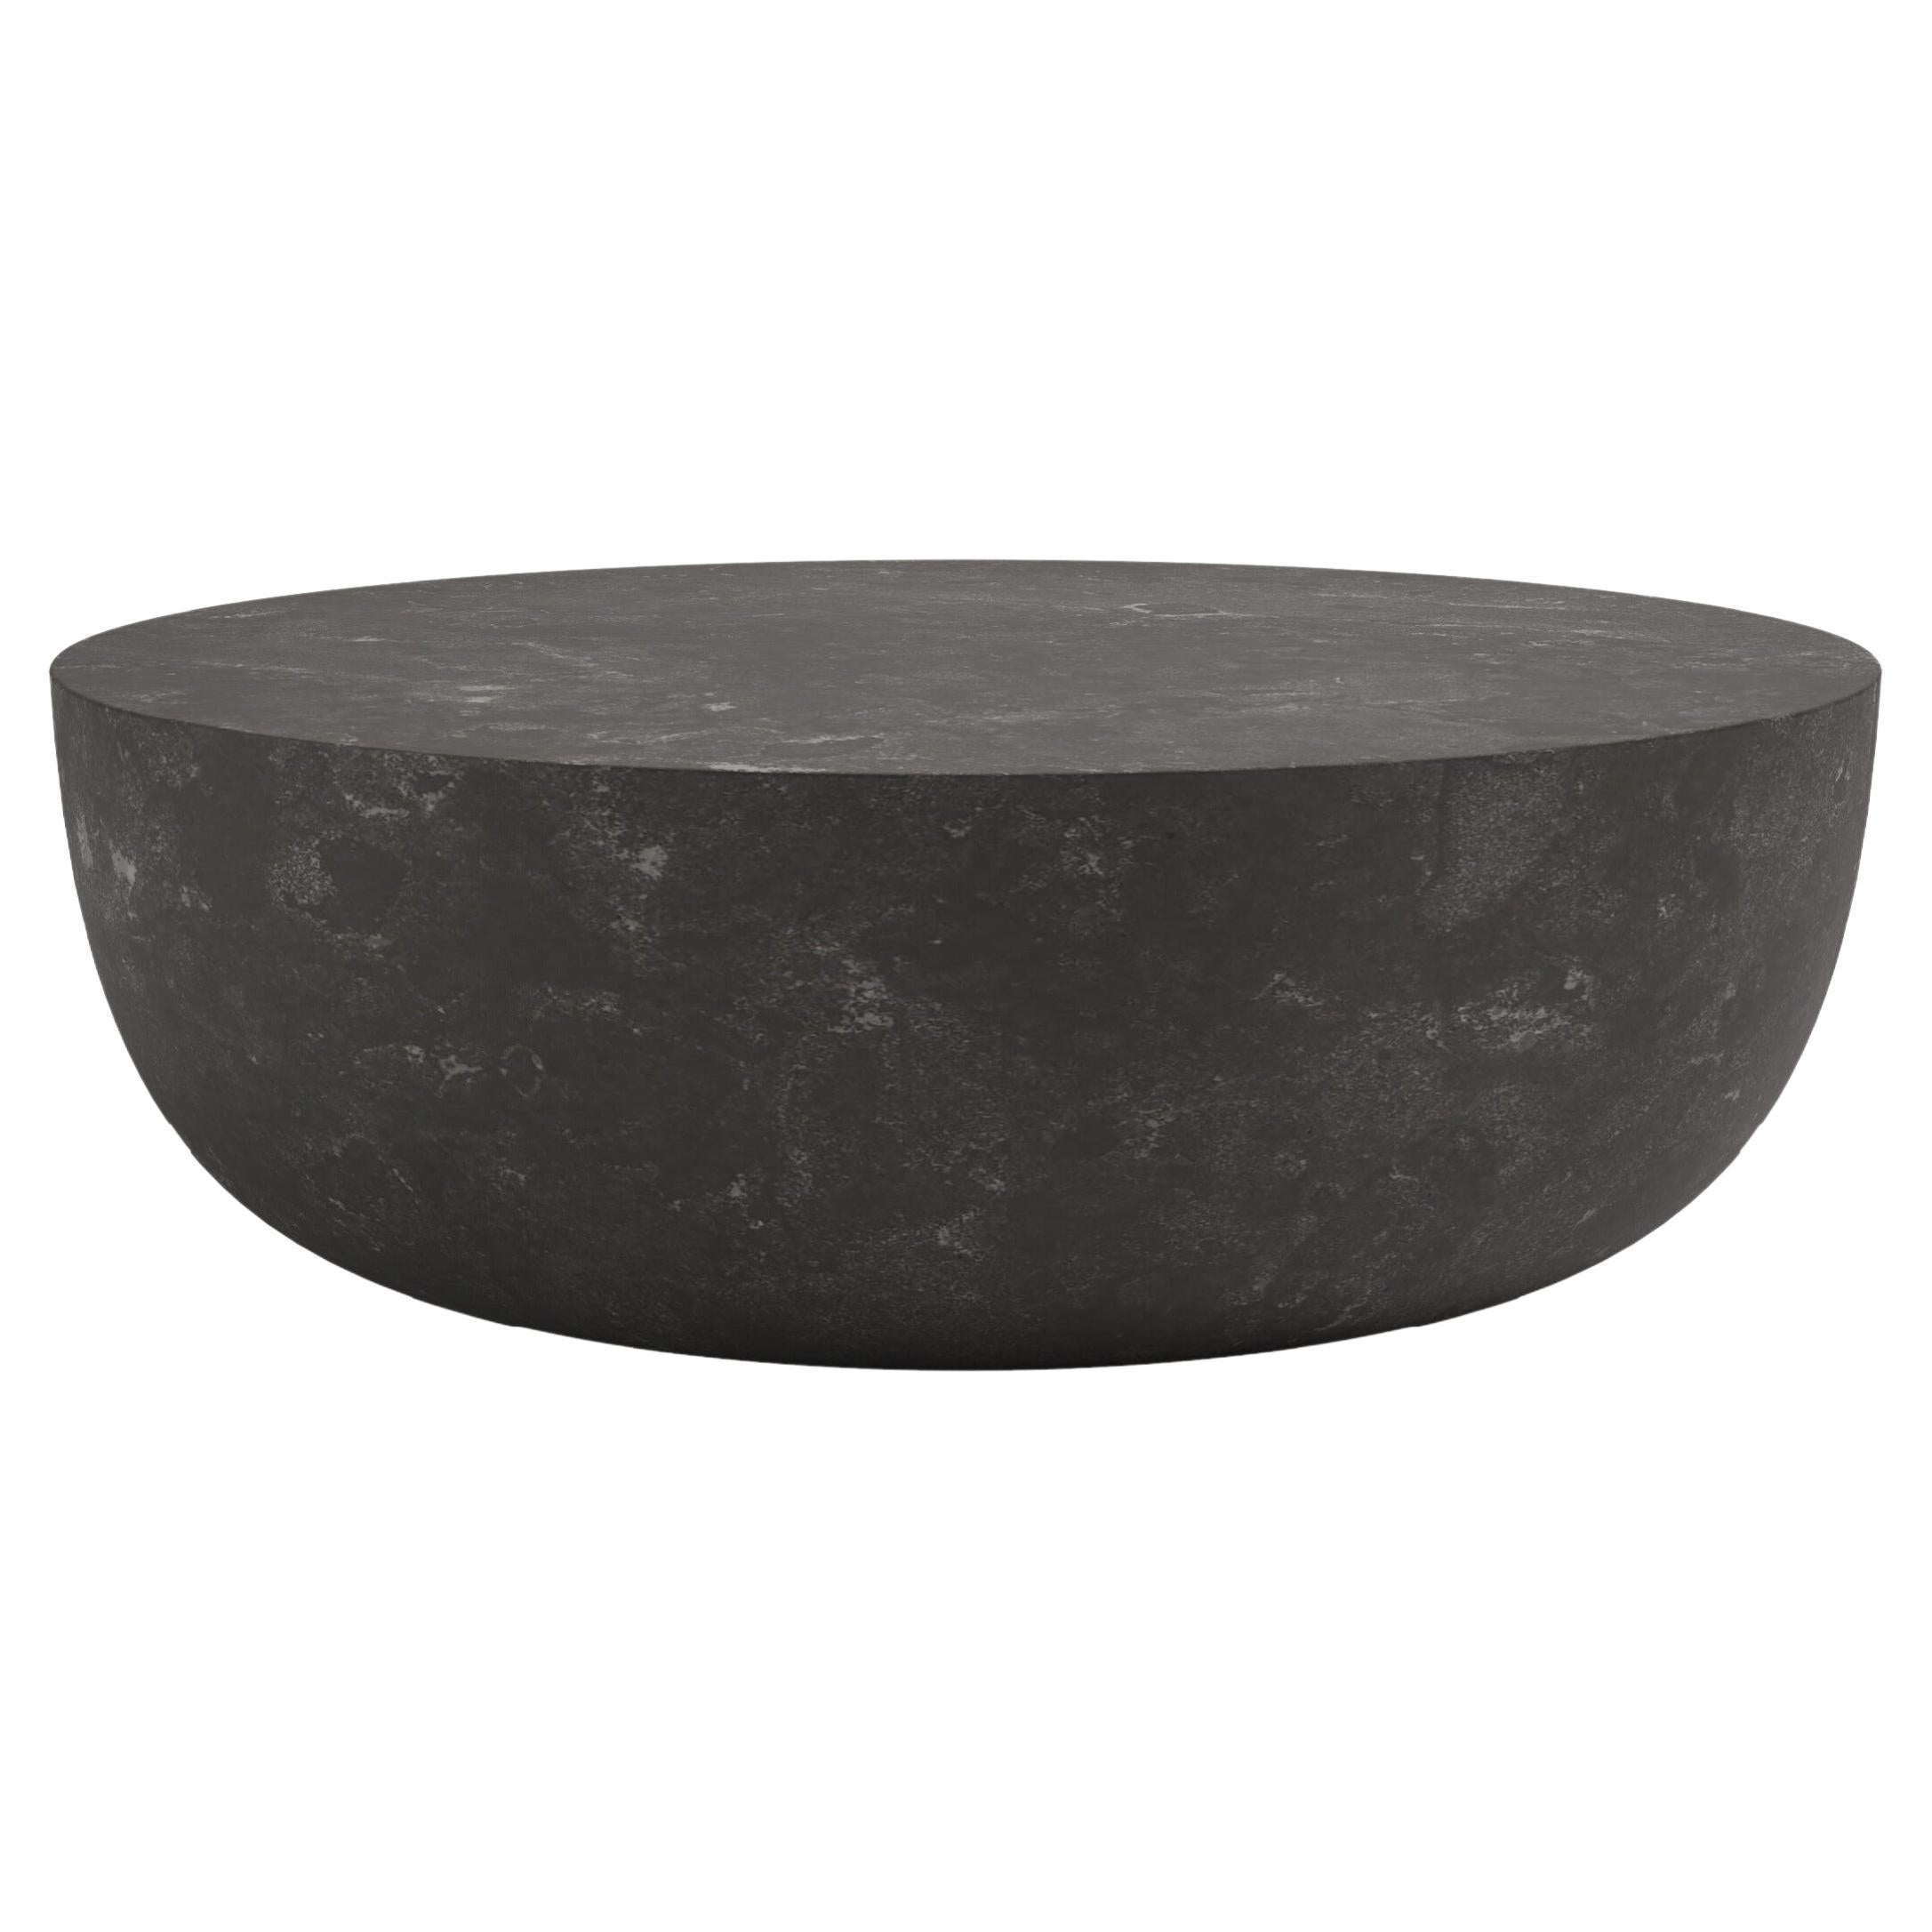 FORM(LA) Sfera Round Coffee Table 60”L x 60”W x 16”H Nero Petite Granite